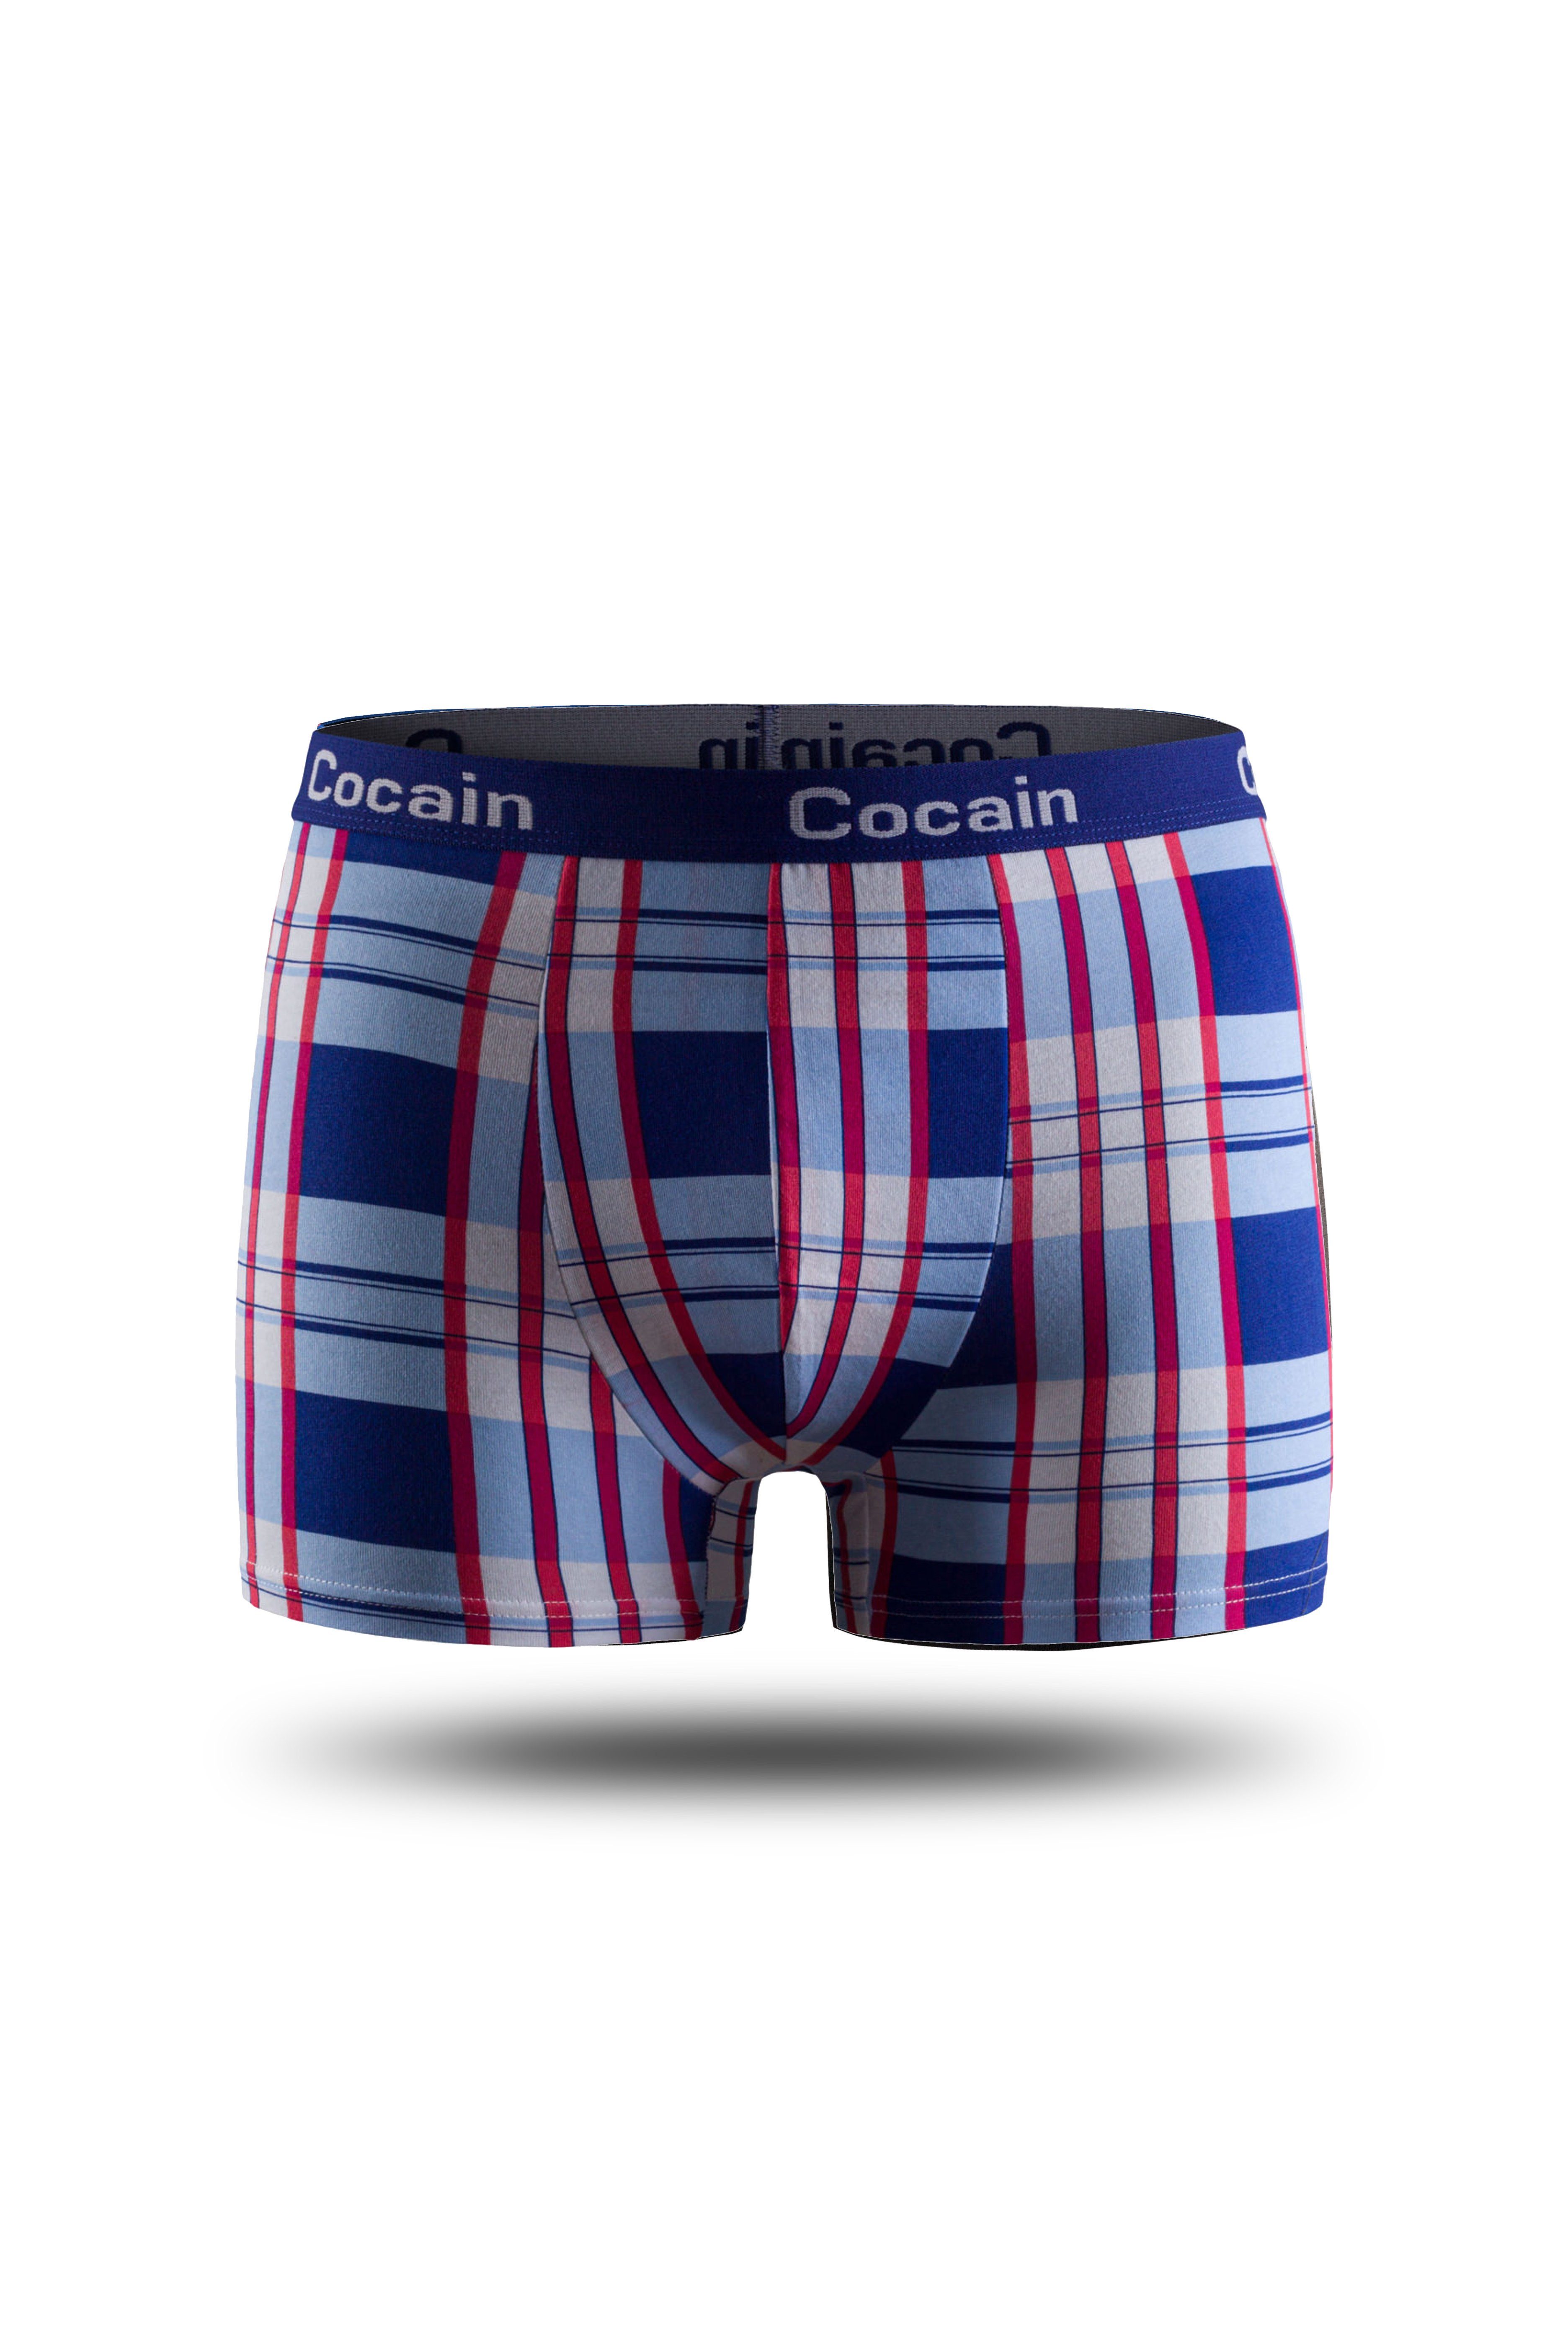 Cocain underwear Boxershorts Herren Boxershorts Karo-Muster am aus Europa Spitzenqualität (5-St., Logoschriftzug Bund 5er-Pack)